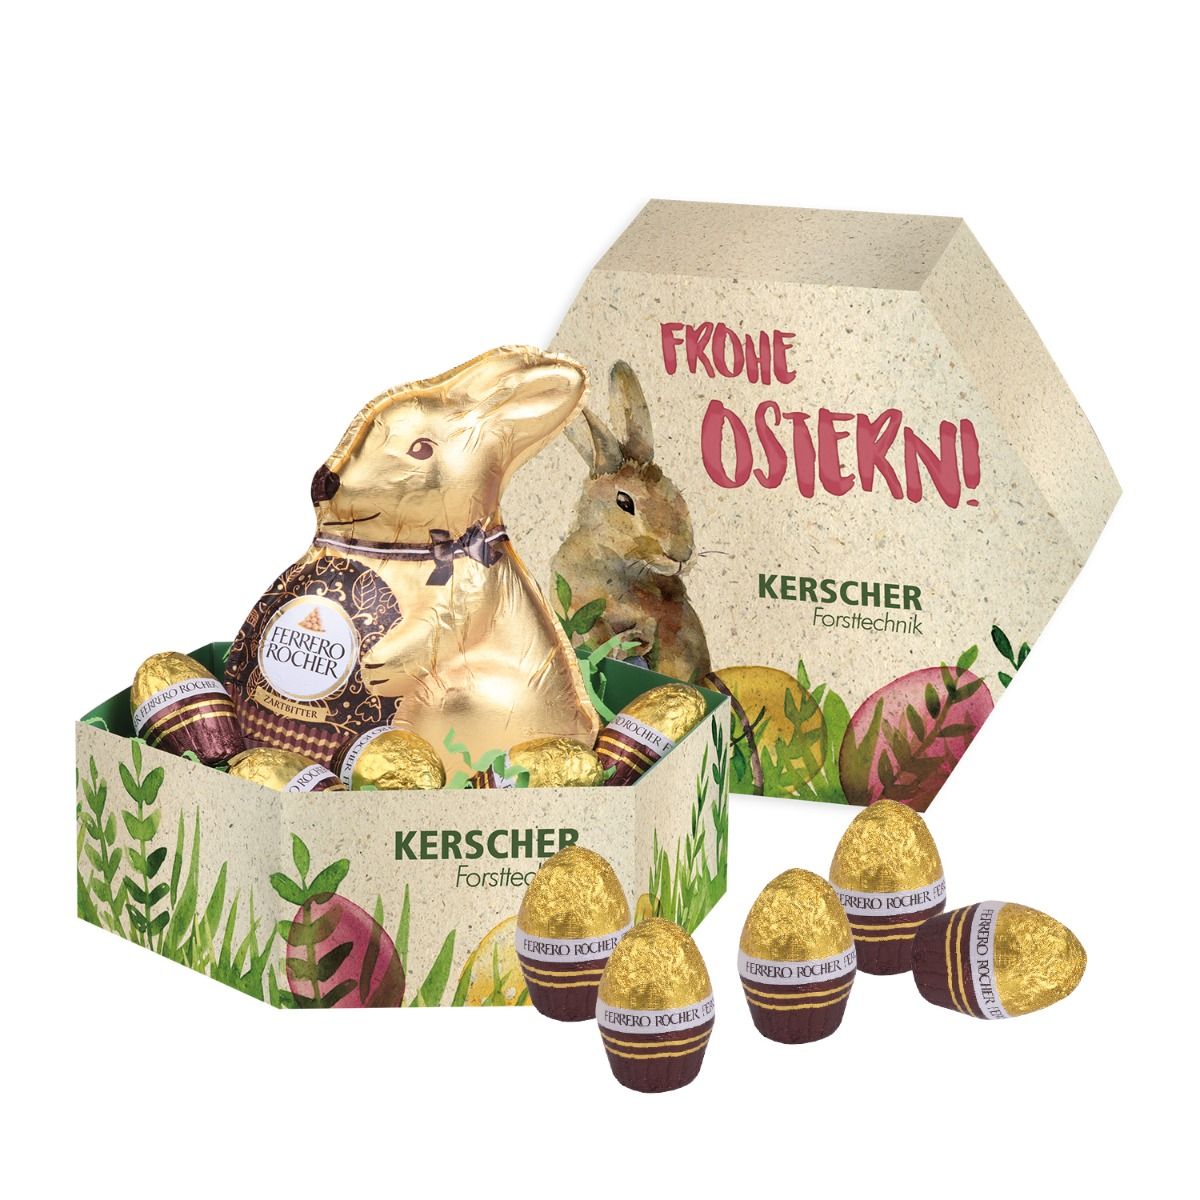 Ferrero Rocher Osternest mit individuellem Druck als Werbeartikel.